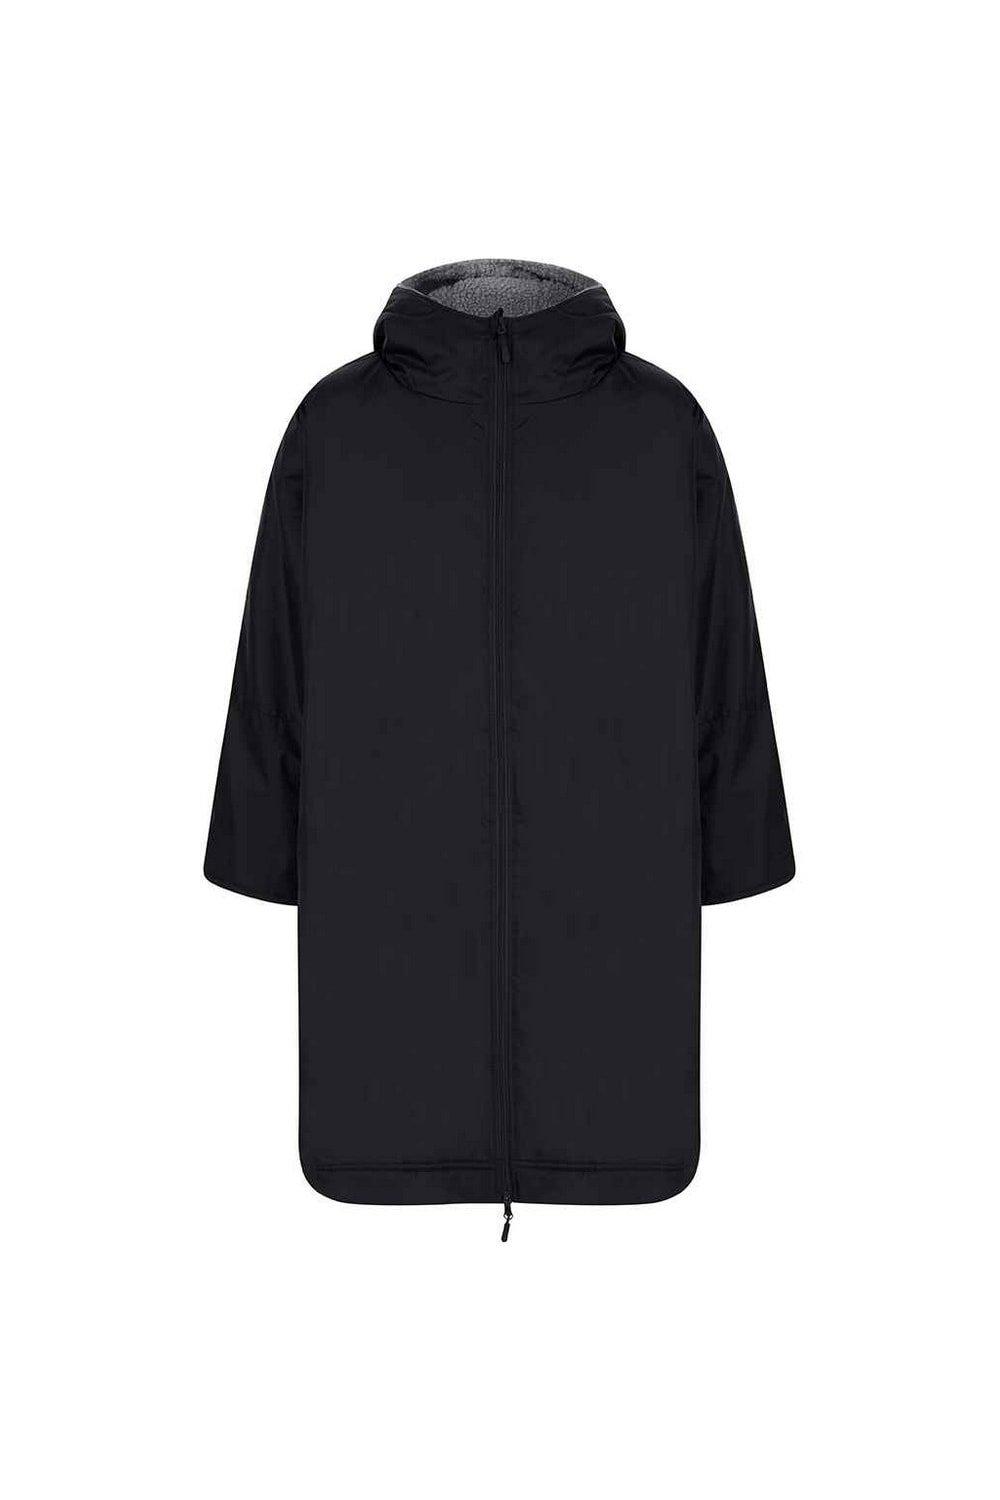 Всепогодная водонепроницаемая куртка Finden & Hales, черный